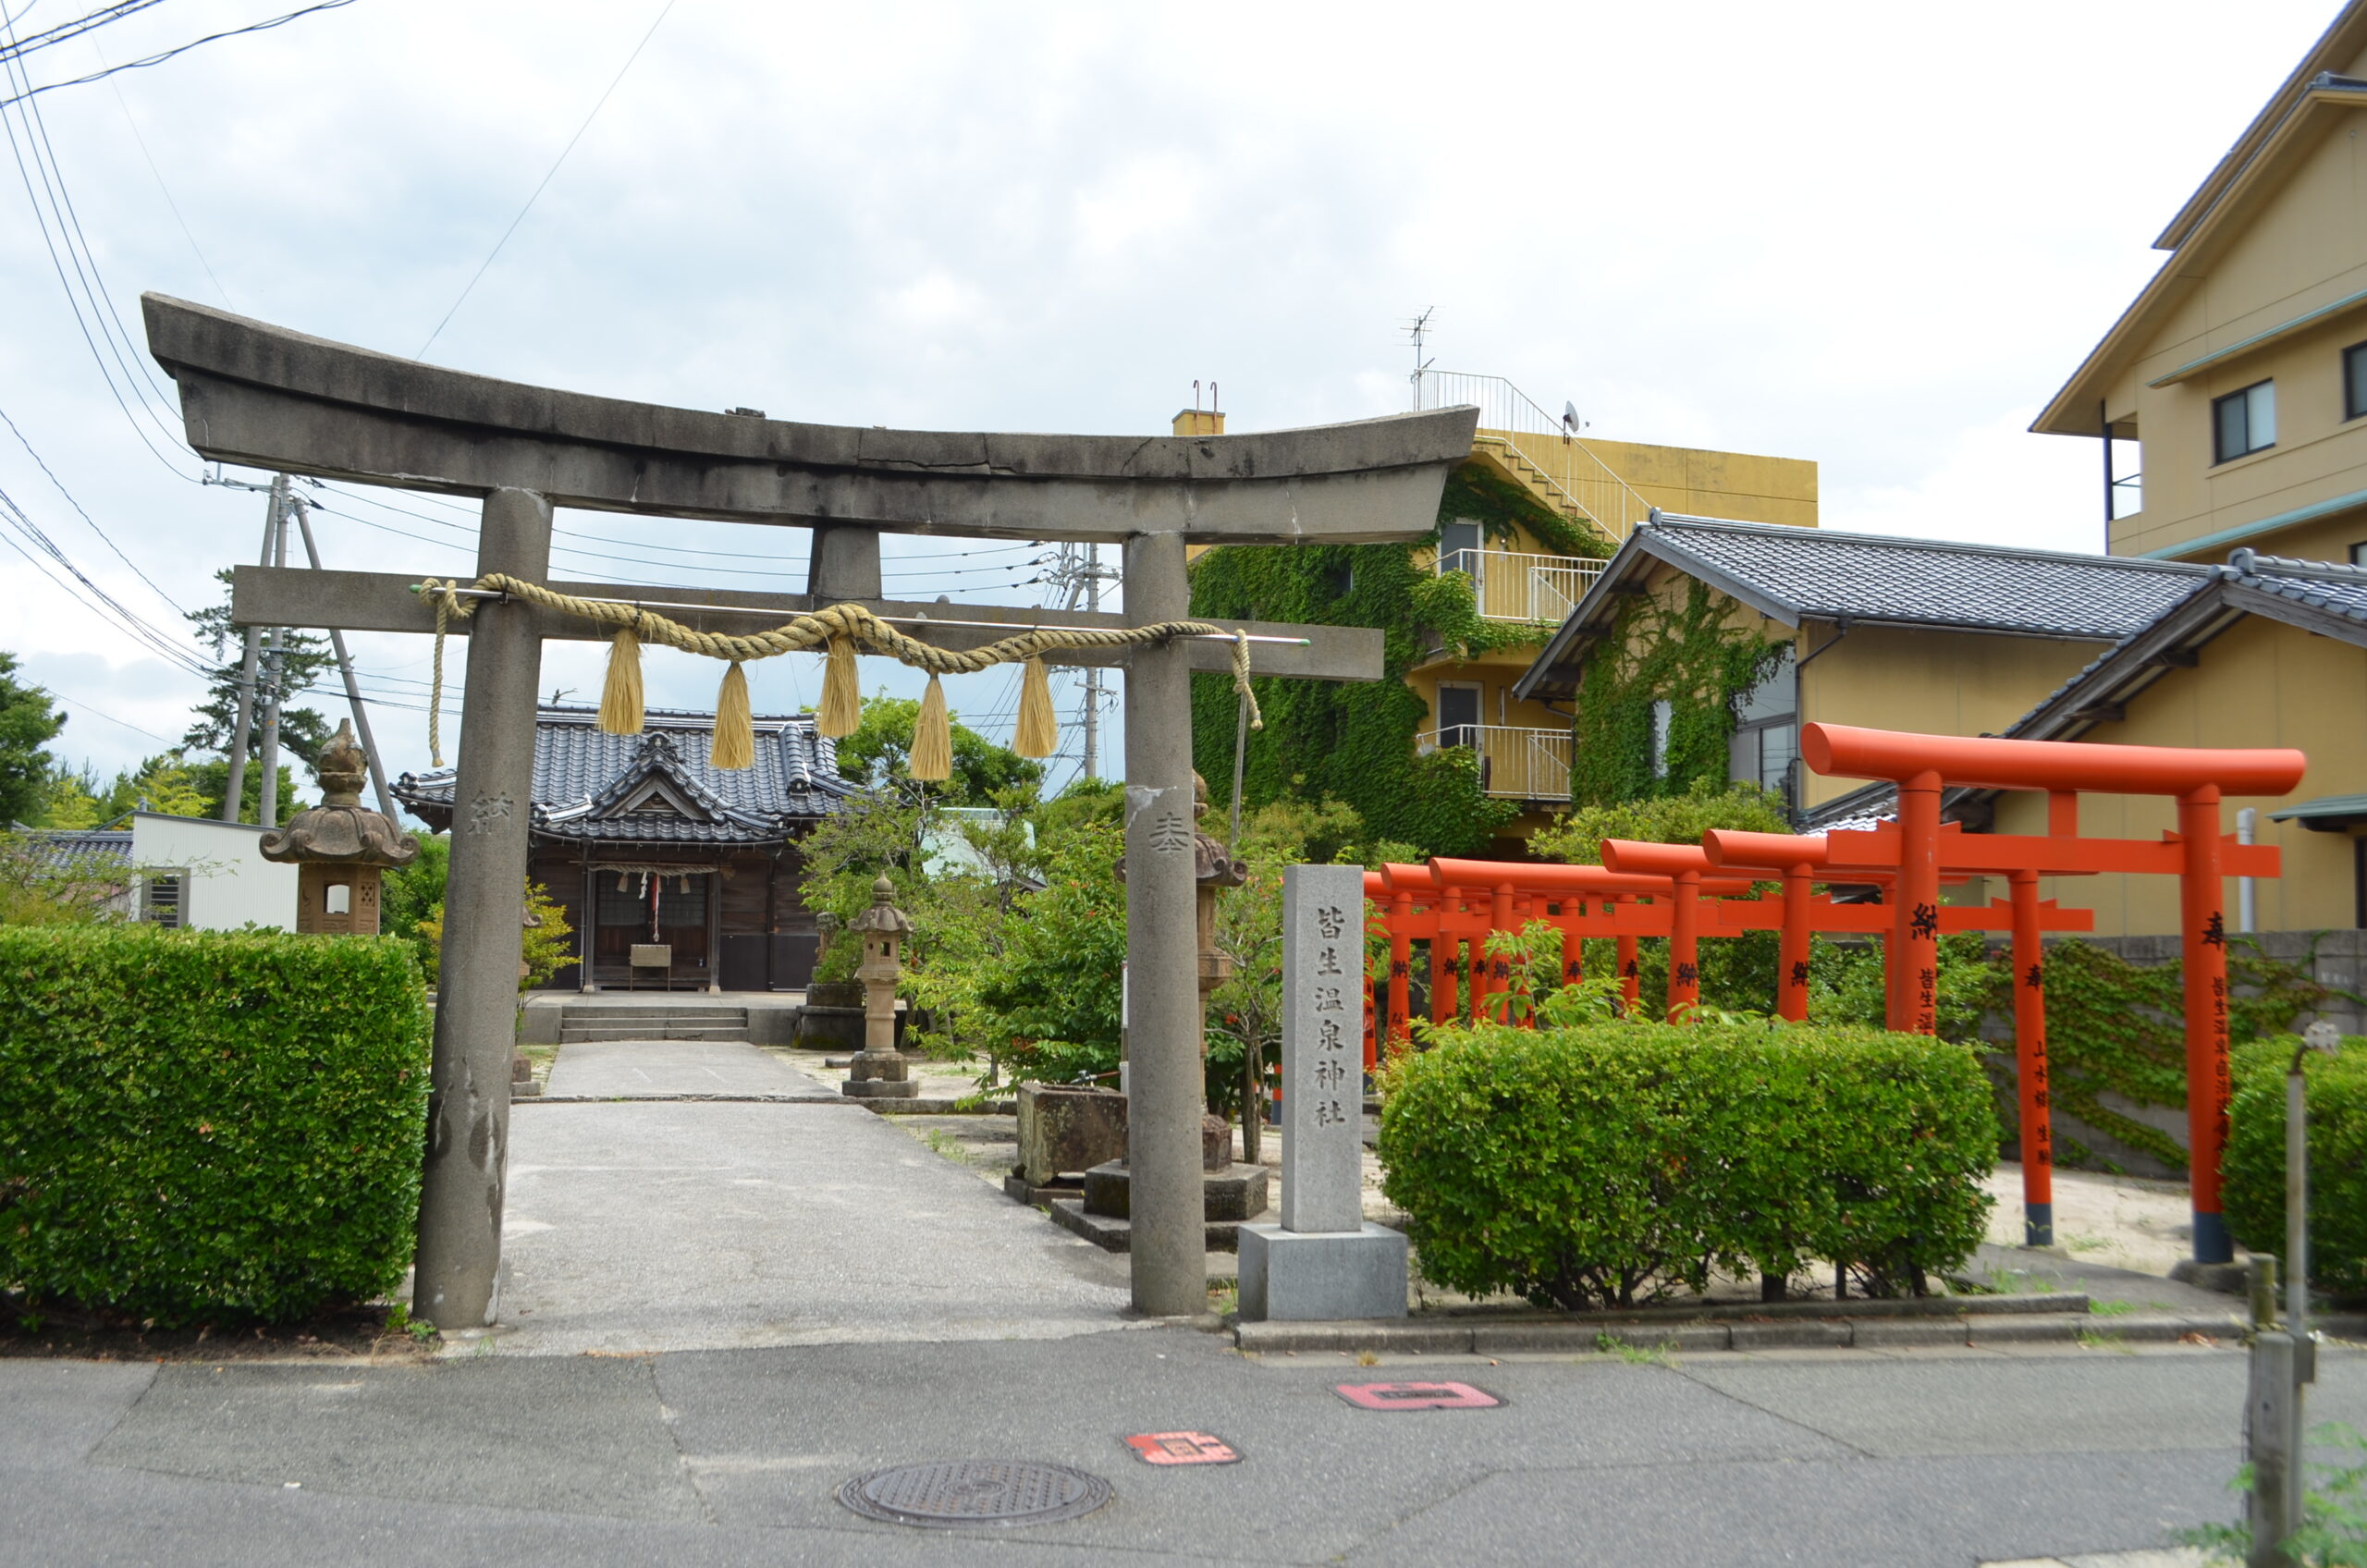 鳥取県米子市 皆生温泉神社にお参りしてきた 皆生温泉街をひっそり見守る神社 佐々井家の片隅で